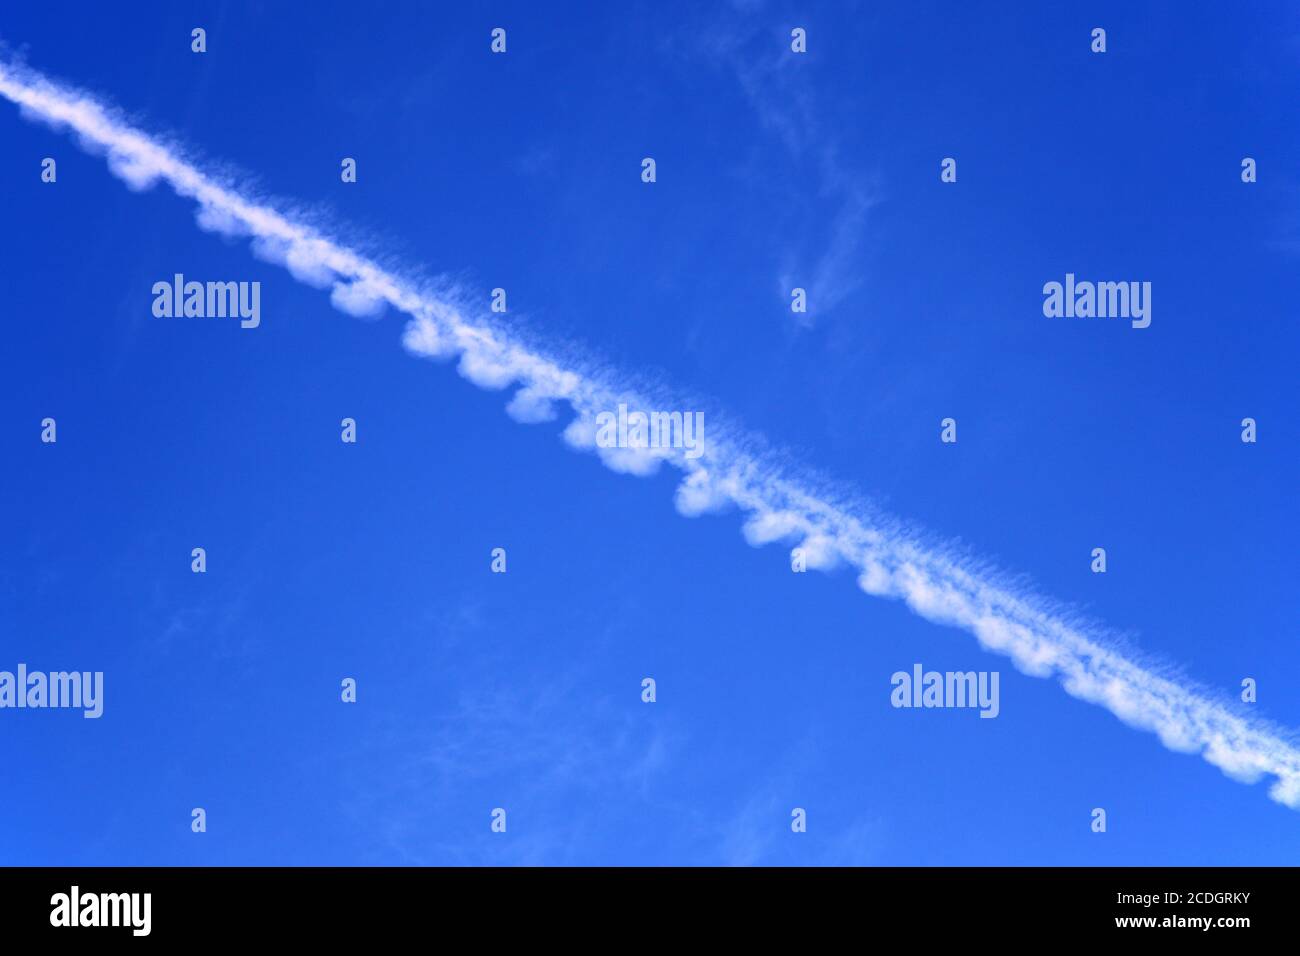 Weißer Flugzeugkontraingel, Kondensstreifen oder Dampfspur gegen blauen Himmel Stockfoto